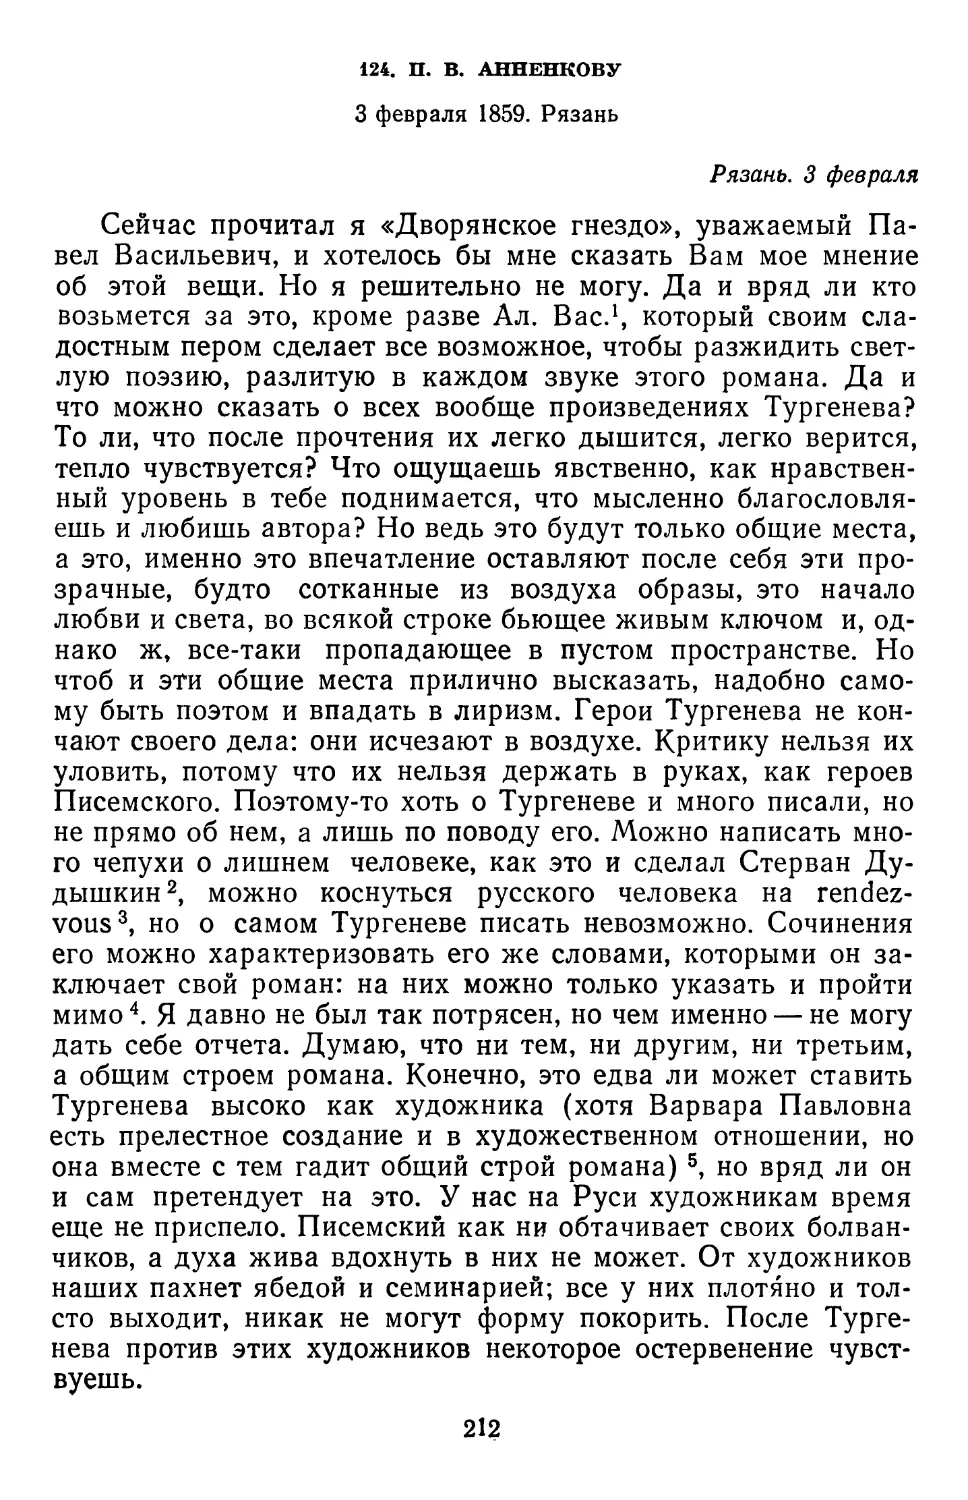 124.П.В. Анненкову. 3 февраля 1859. Рязань